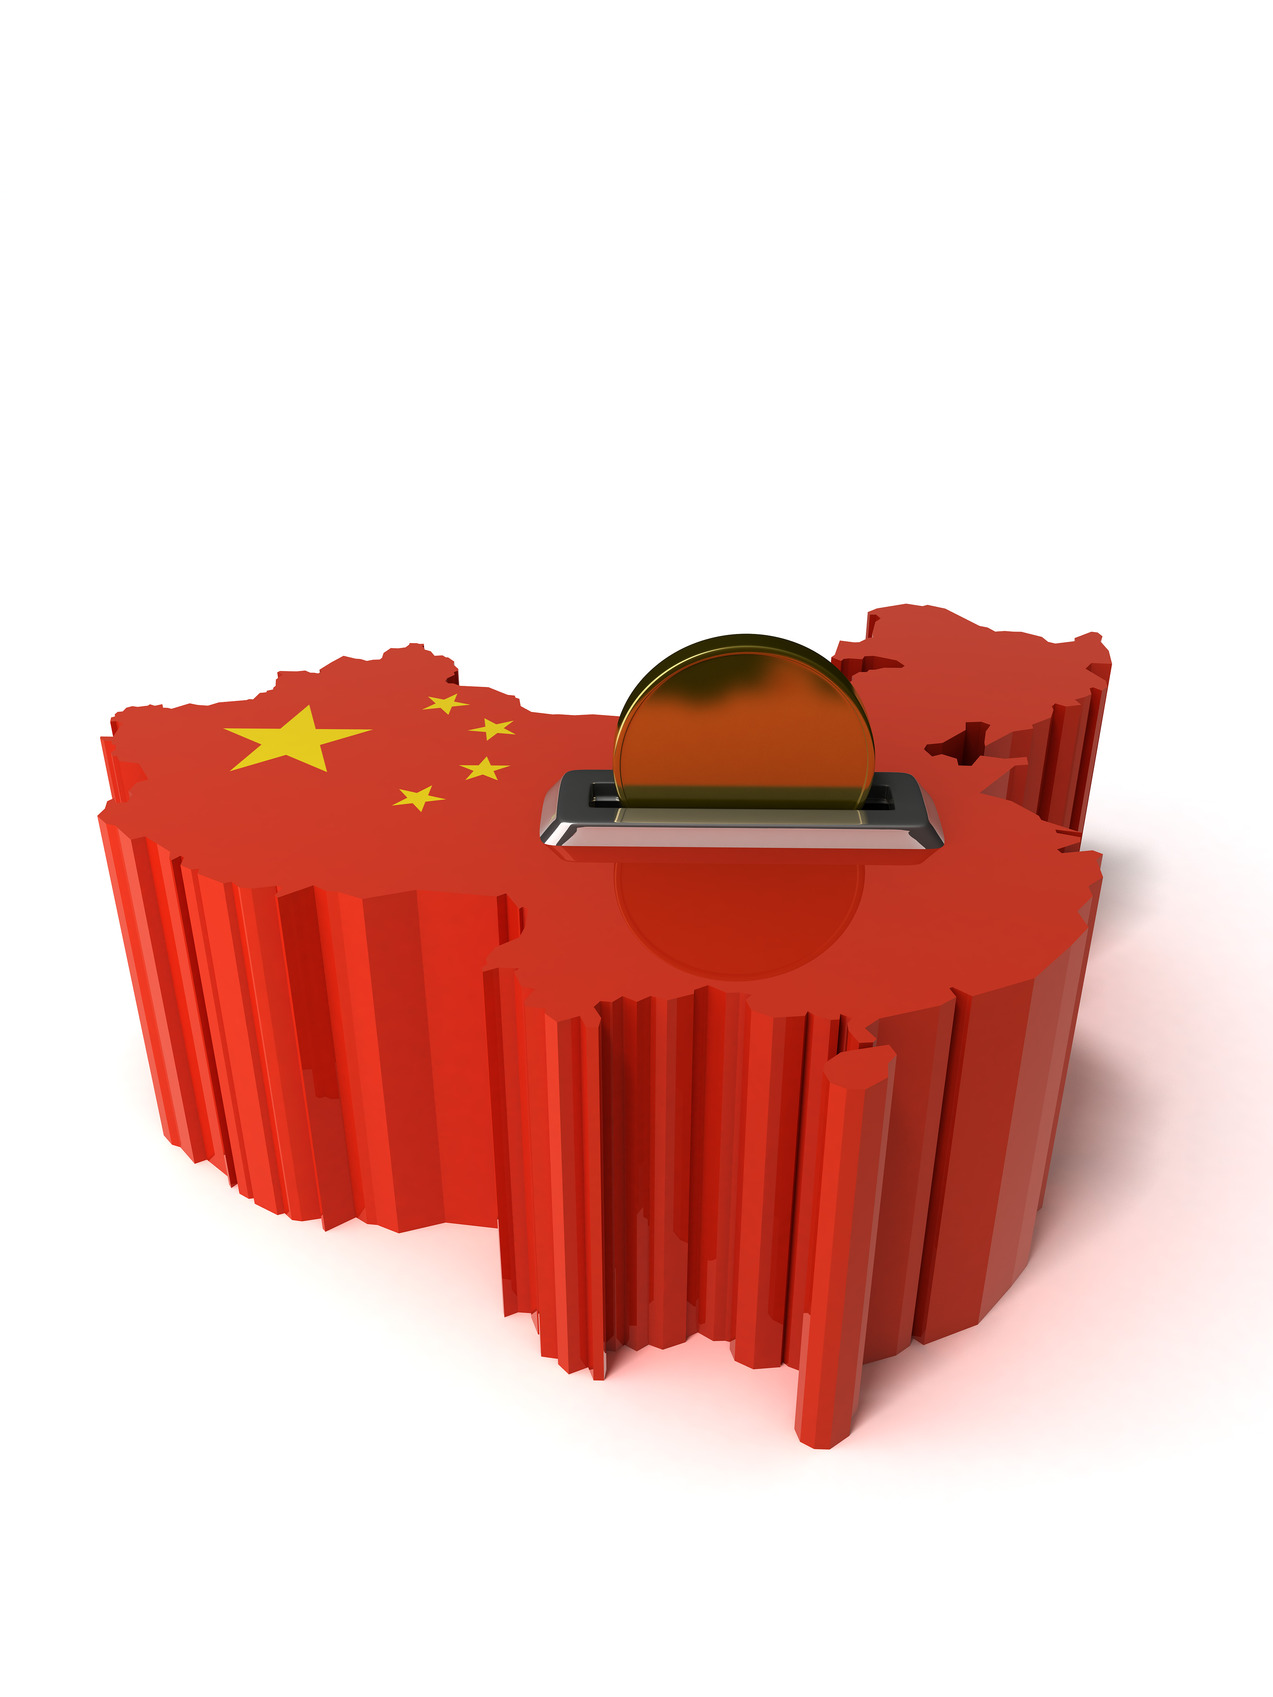 중국 경제발전의 동력과 주요임무